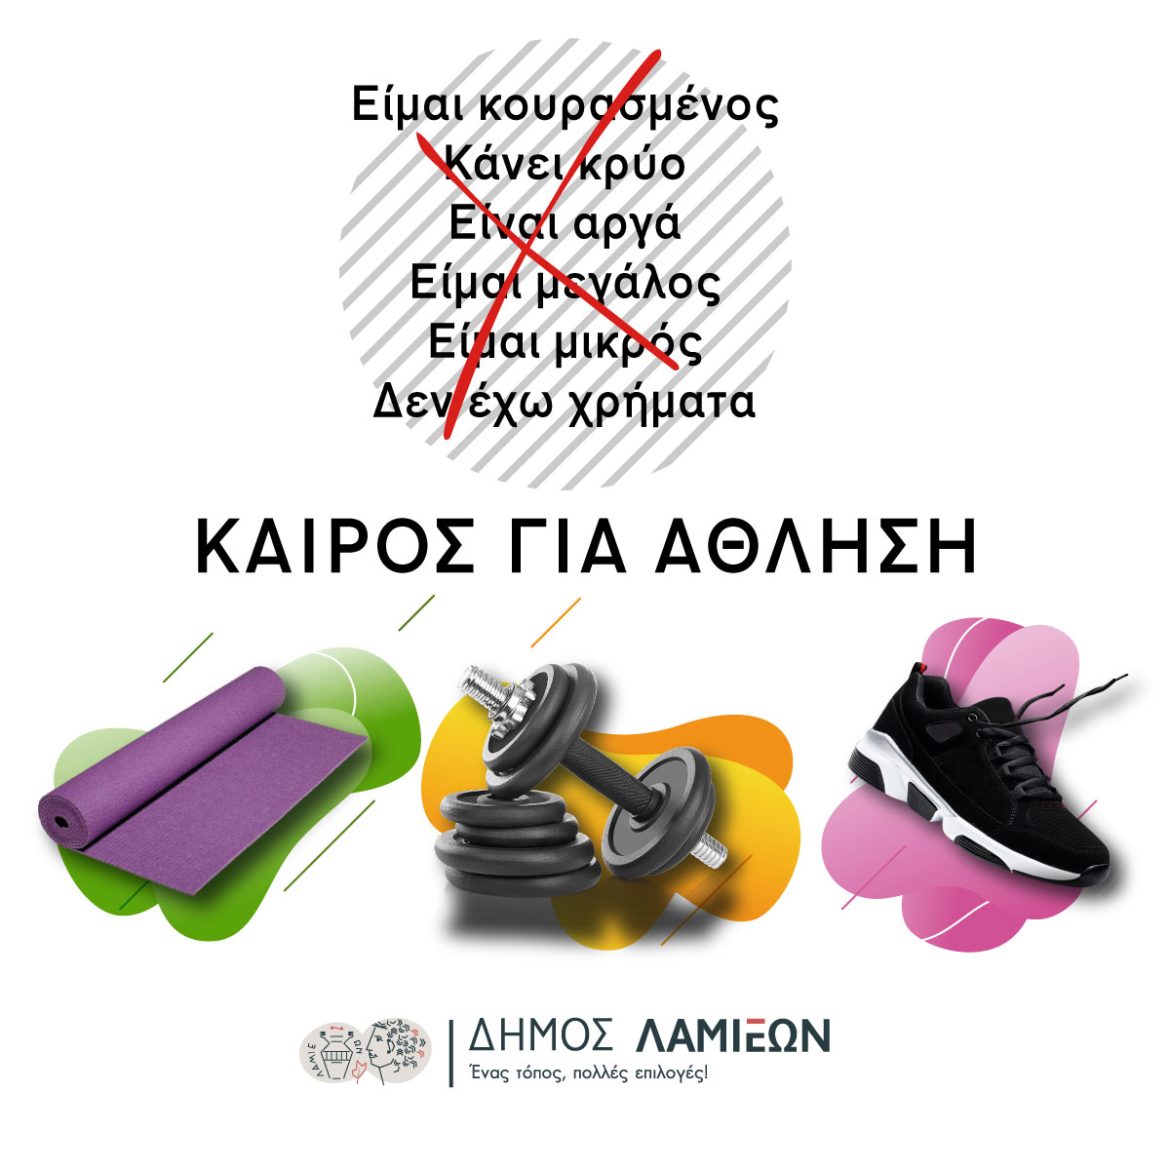 Δράσεις για το "Πρόγραμμα Άθλησης για όλους" (Π.Α.γ.Ο) του Δήμου Λαμιέων